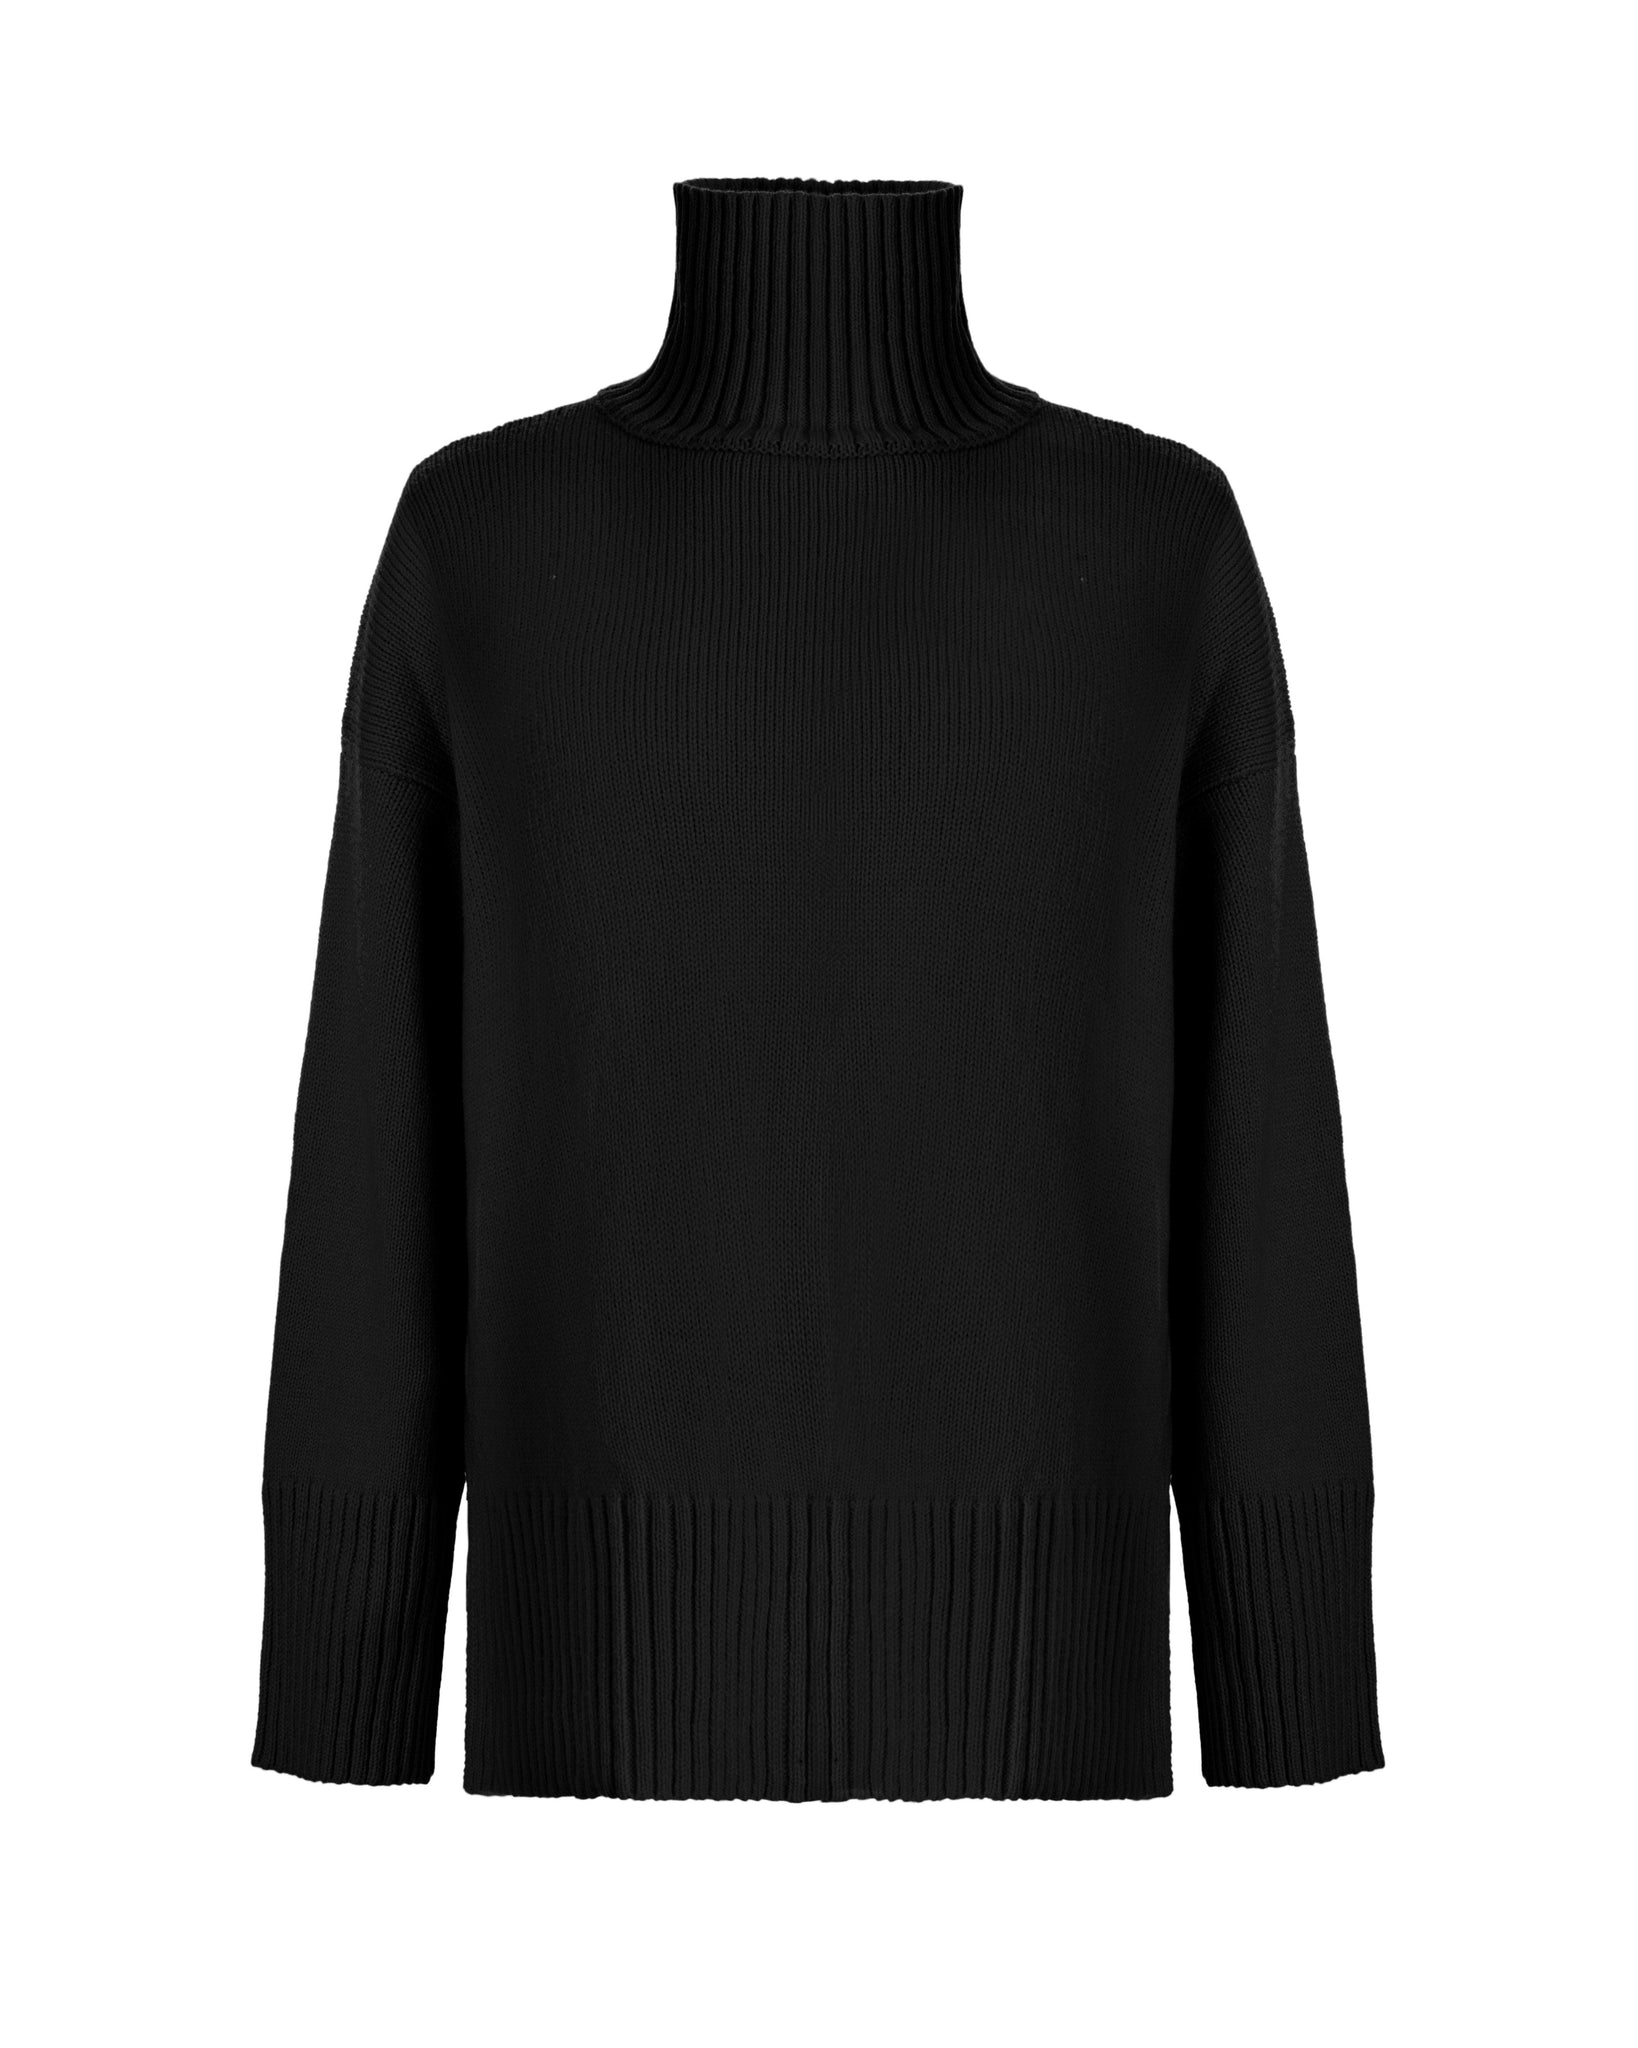 Black Sweater | Sleek Luxury Knit | Designer Knitwear UK